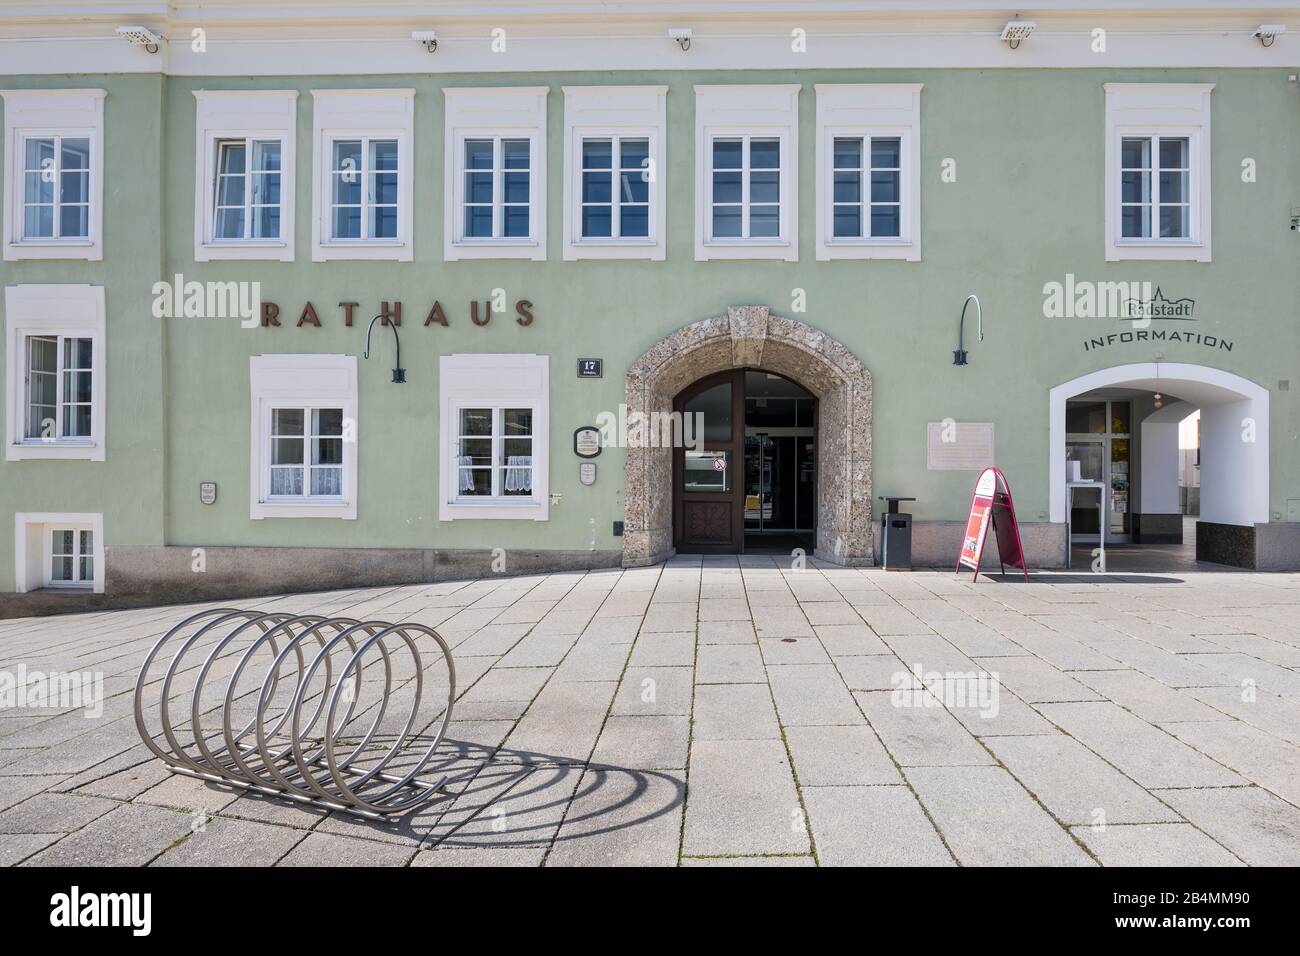 Rathaus Und Informationsstelle Am Stadtplatz, Radstadt, Pongau, Land Salzburg, Österreich, Oktober 2019 Foto Stock